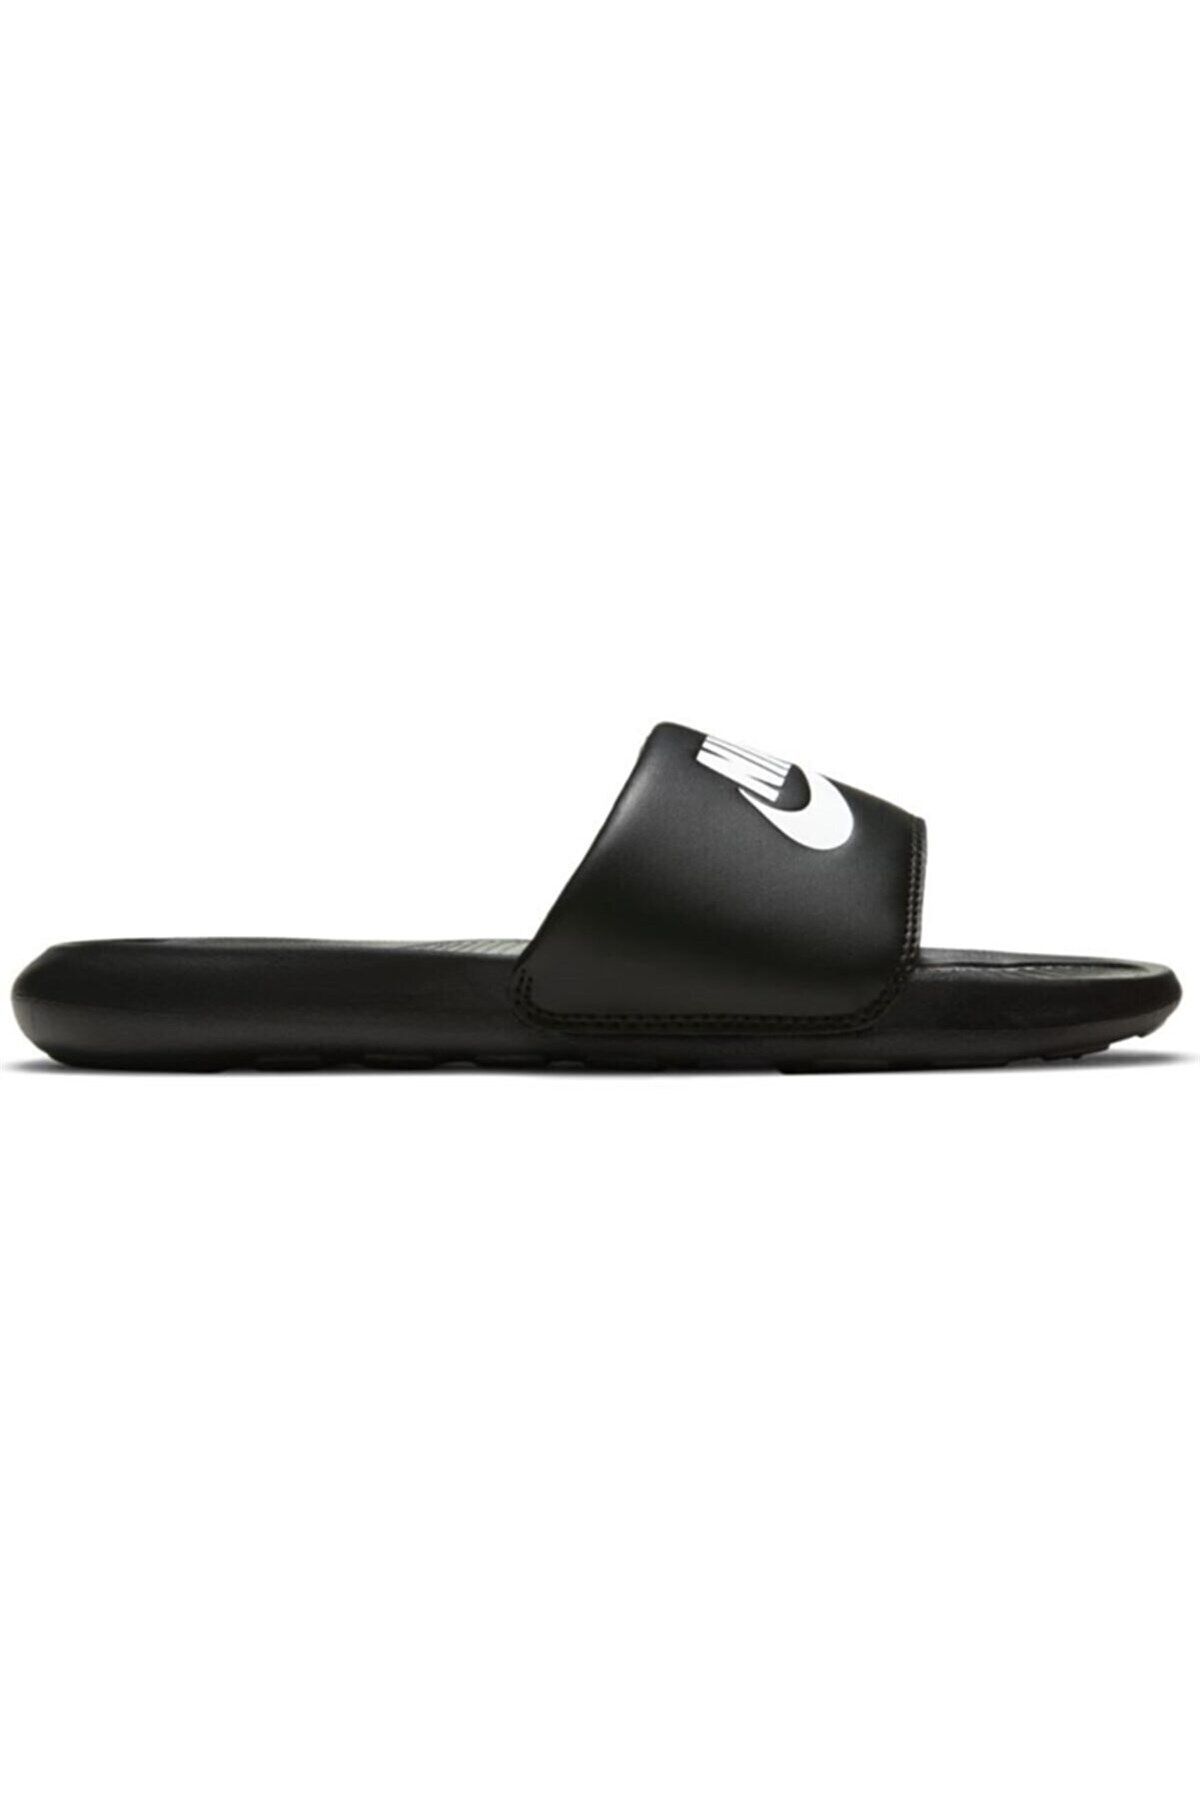 Nike W Victori One Slide Kadın Terlik Ayakkabı Cn9677-005-sıyah